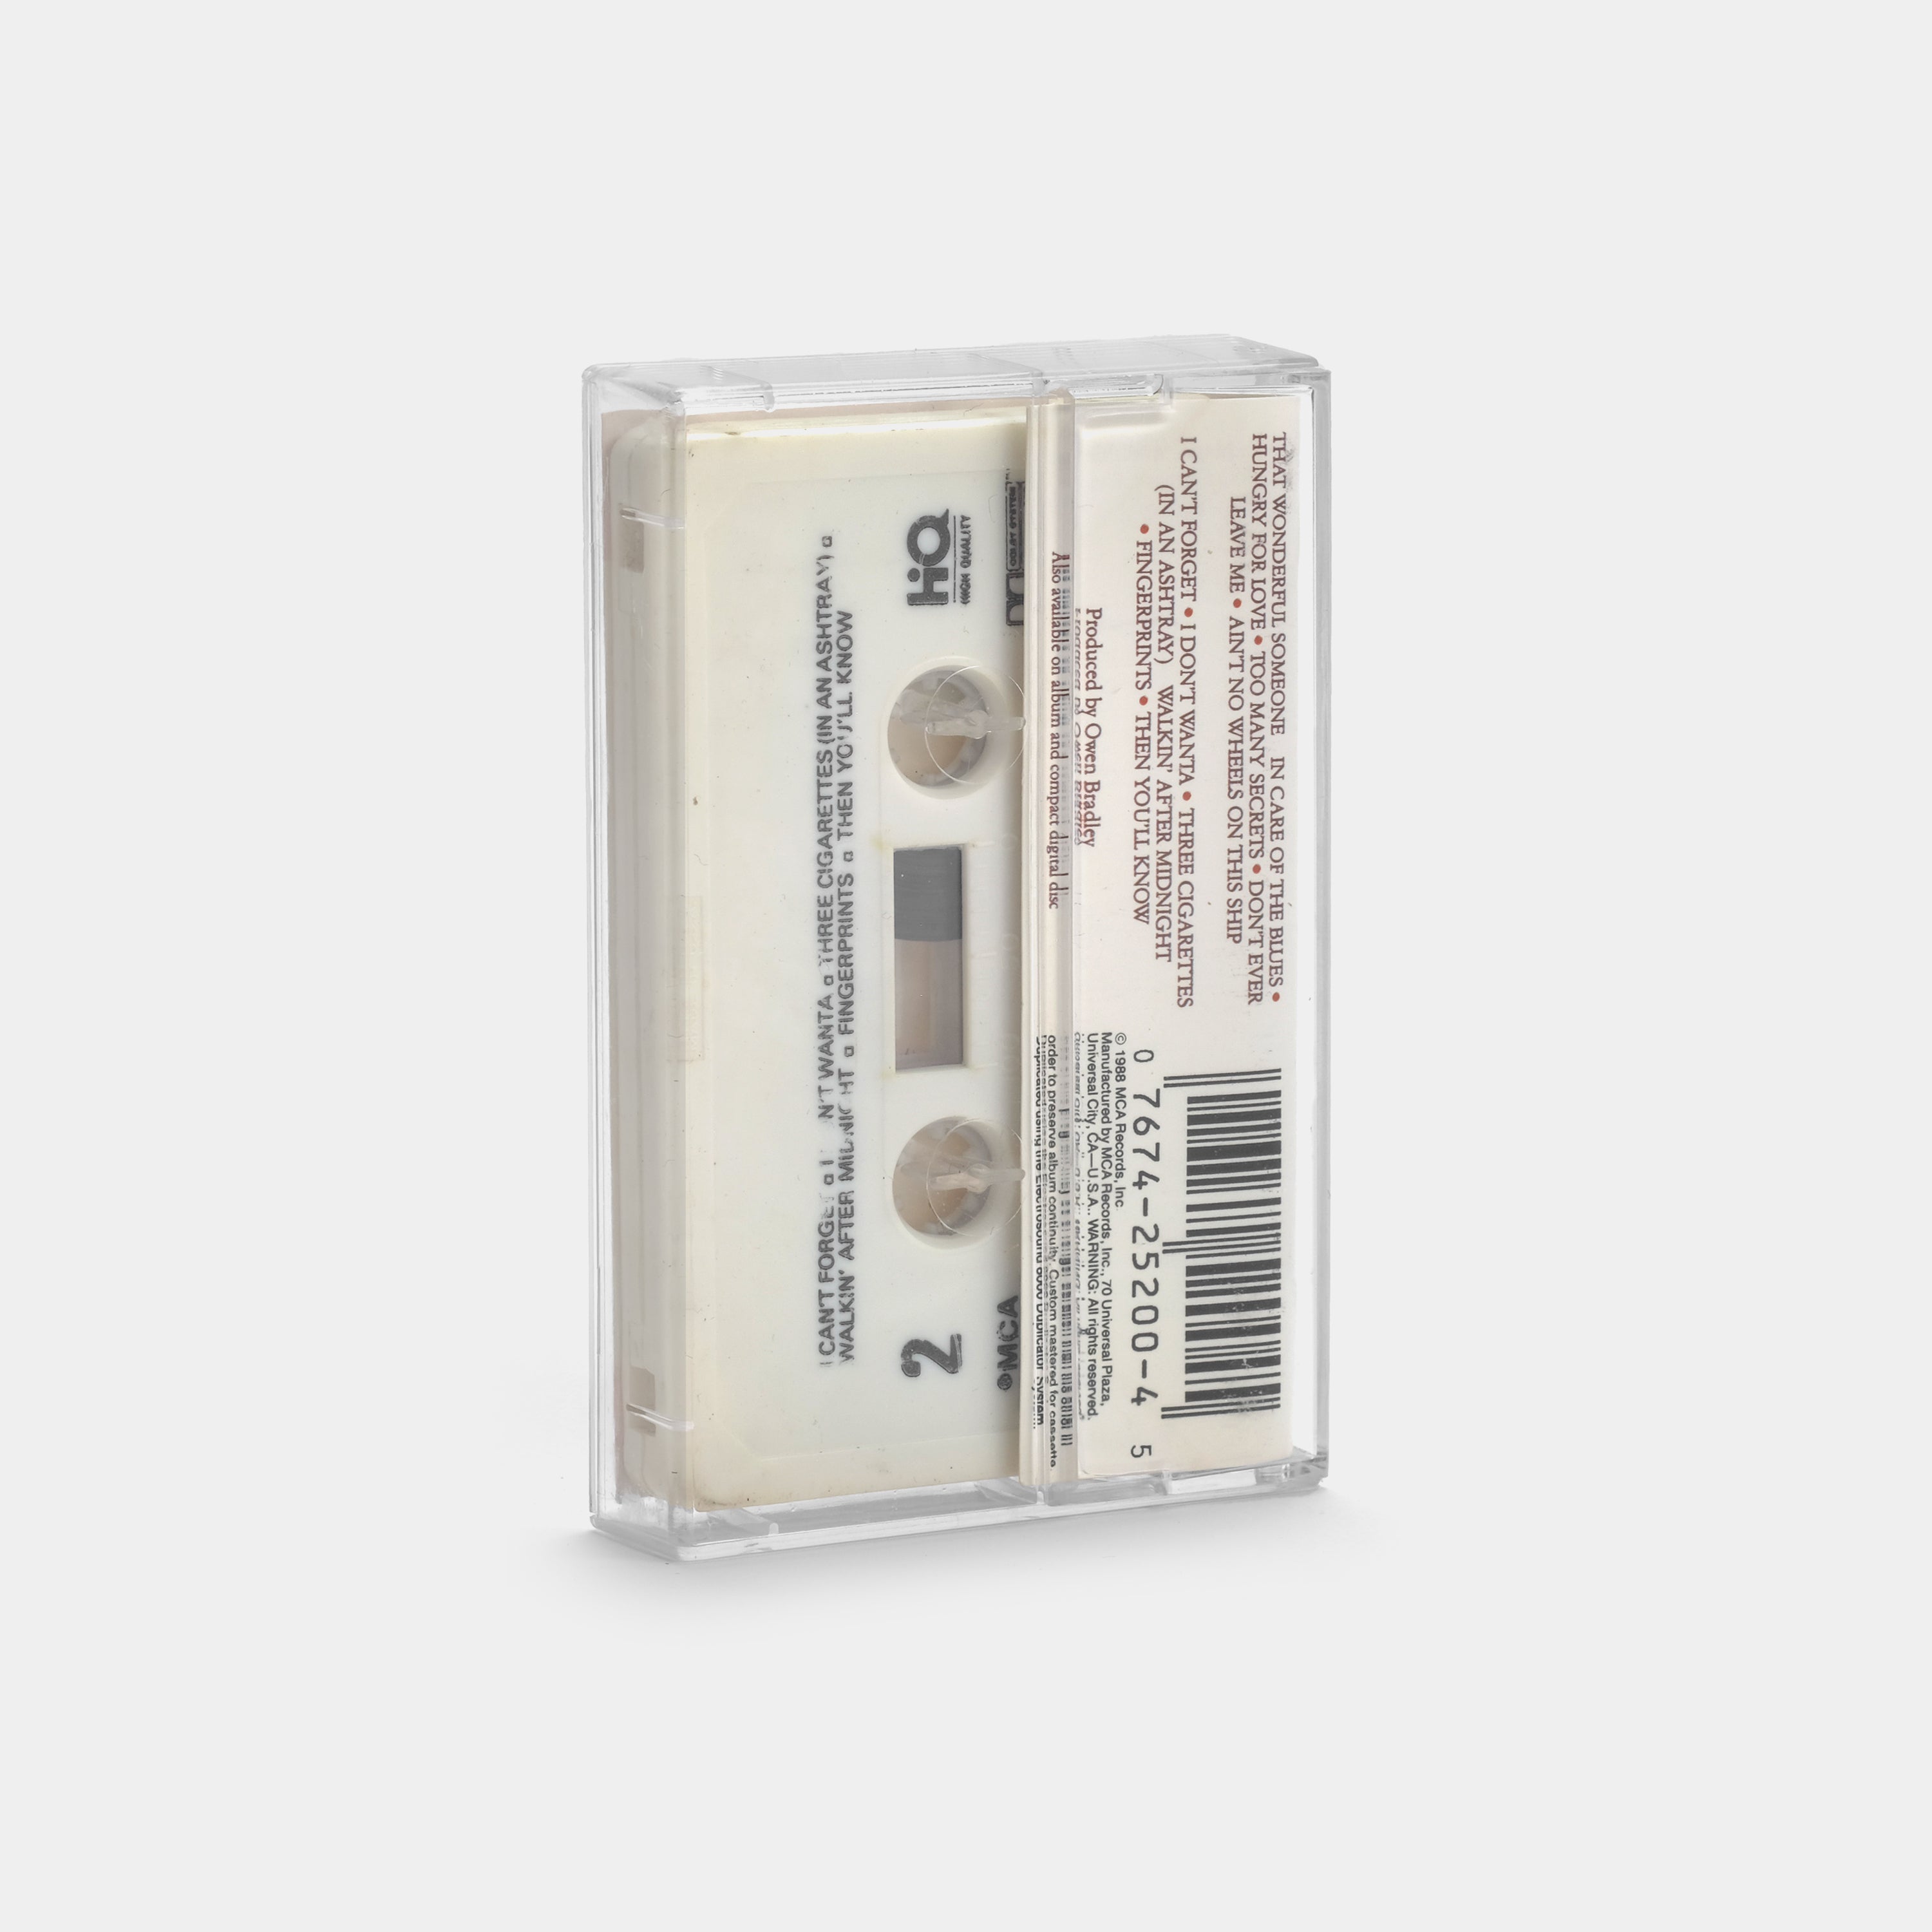 Patsy Cline - Patsy Cline Cassette Tape